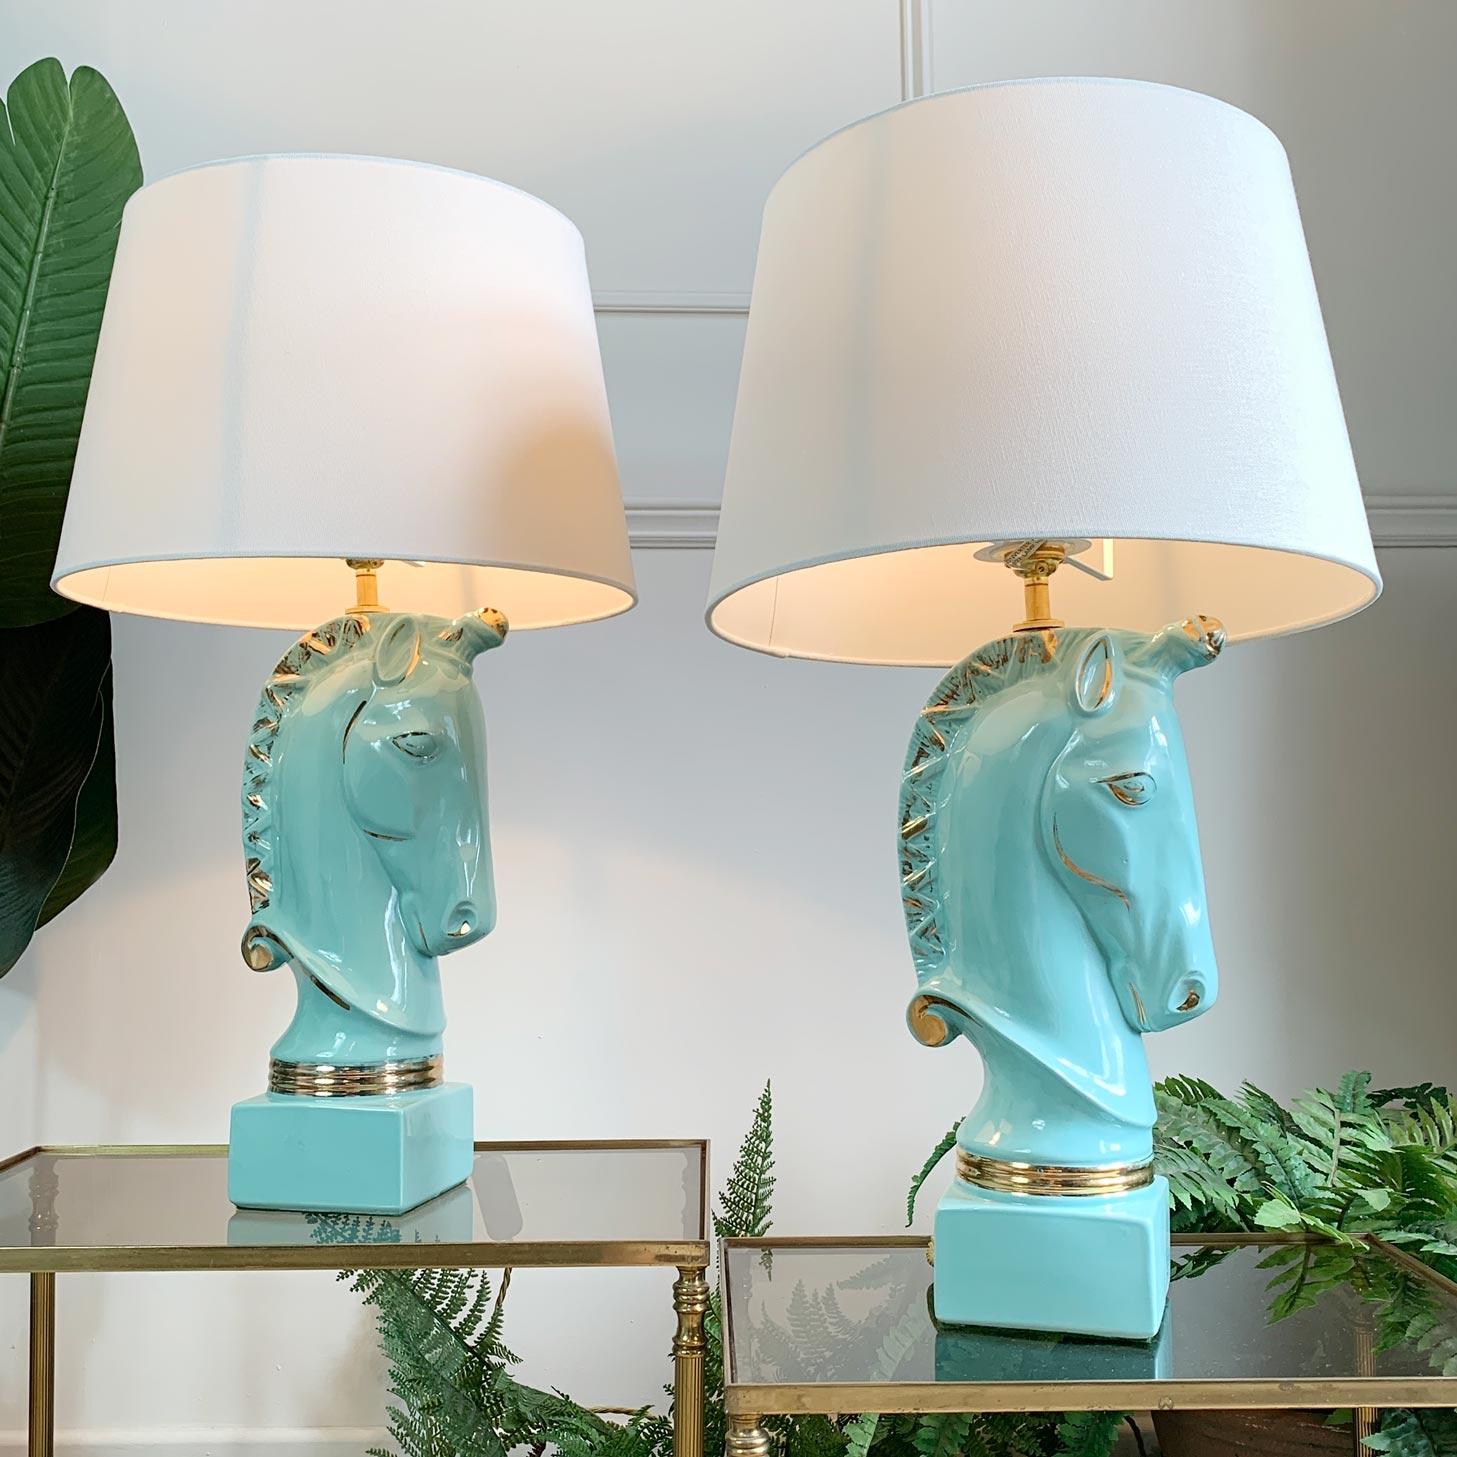 Une magnifique paire de lampes en céramique américaine, fabriquée dans les années 1950 par Howell. Les détails turquoise et or 24 carats de chacune des lampes Unicorn exsudent l'opulence et le glamour. Ils font partie de la gamme 